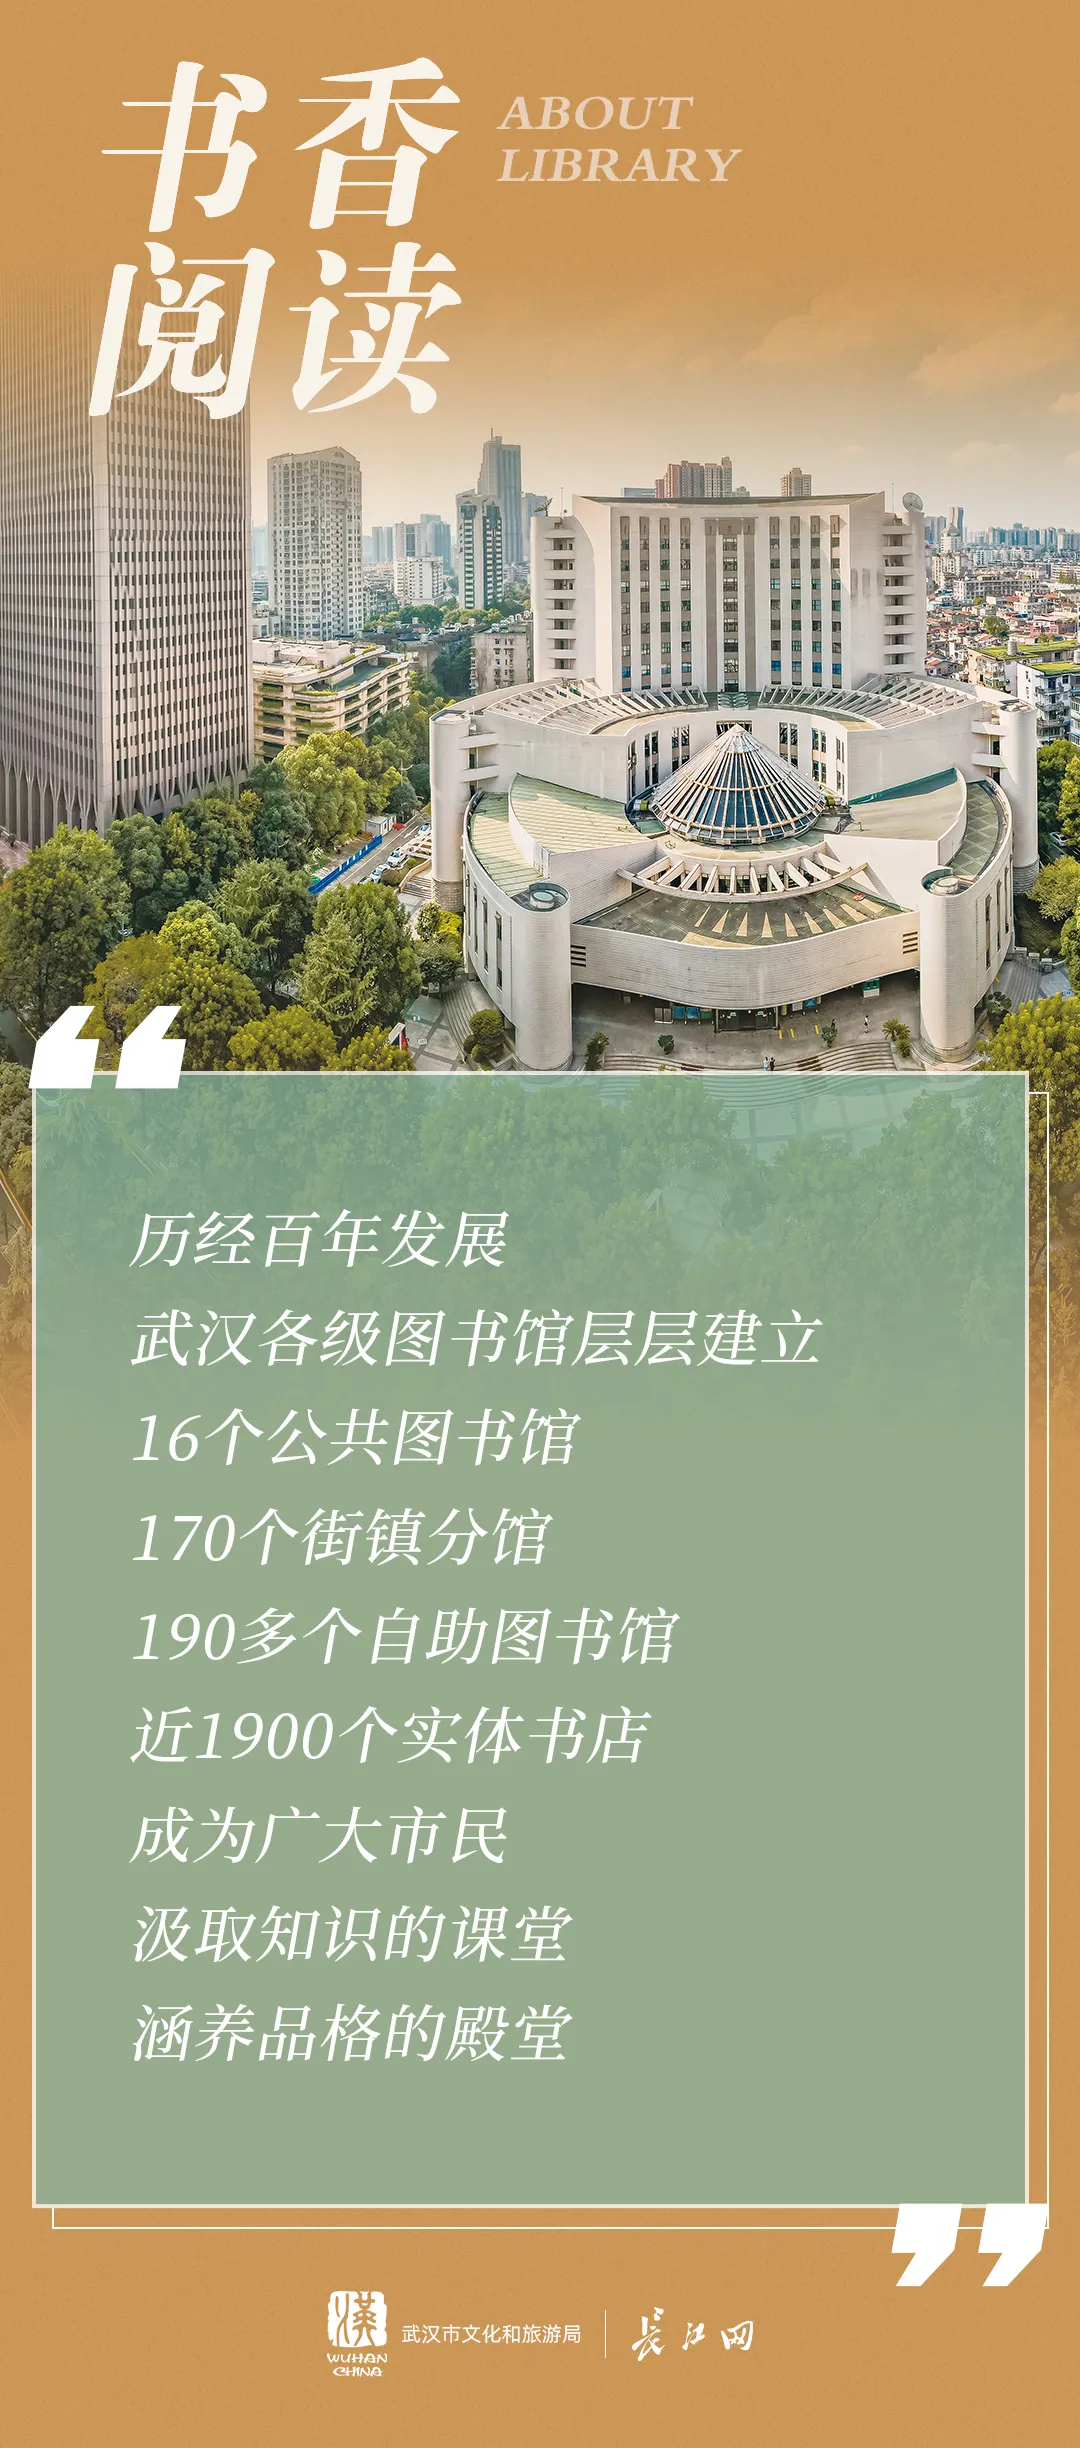 《武汉文化场馆概览》正式发布